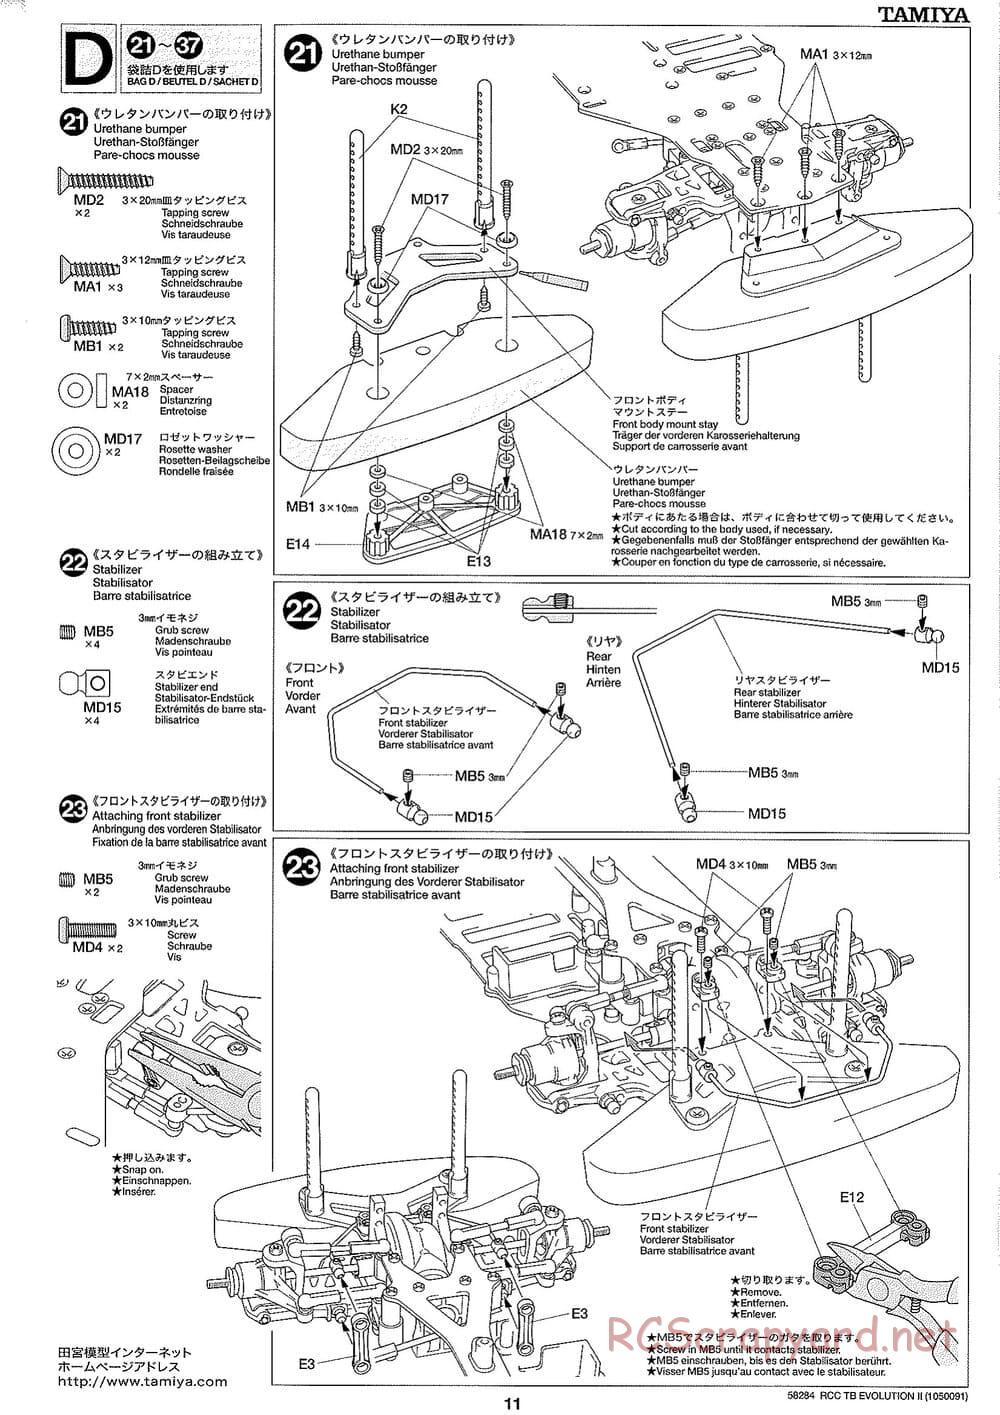 Tamiya - TB Evolution II Chassis - Manual - Page 11